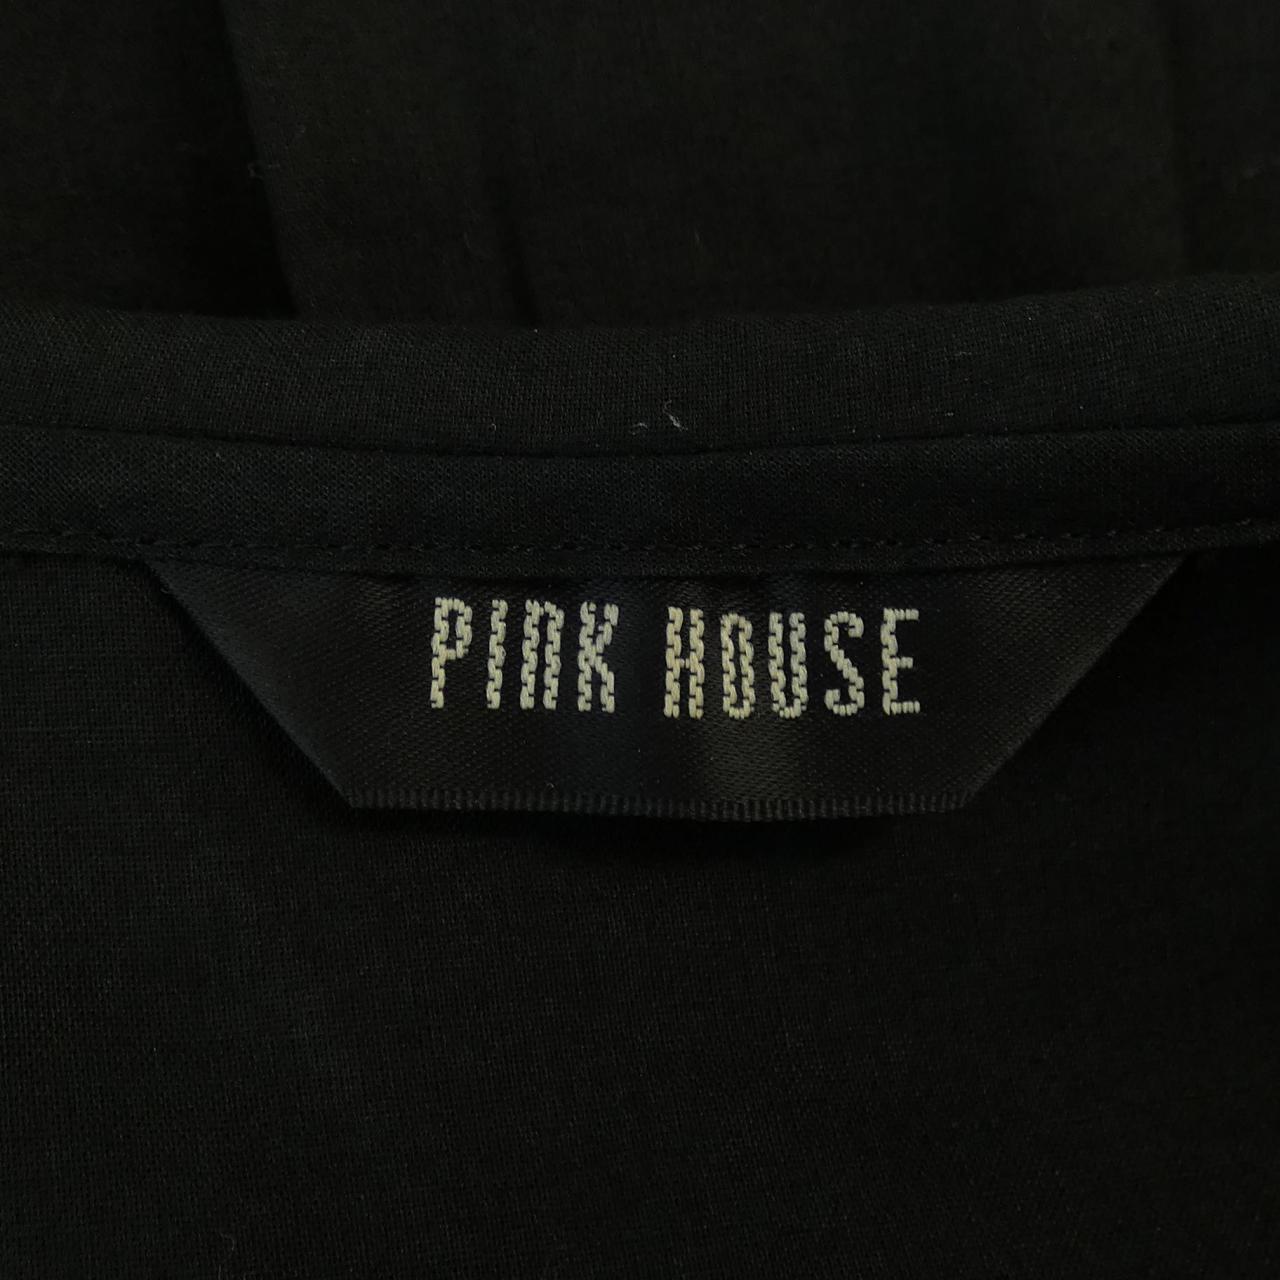 ピンクハウス PINK HOUSE シャツ